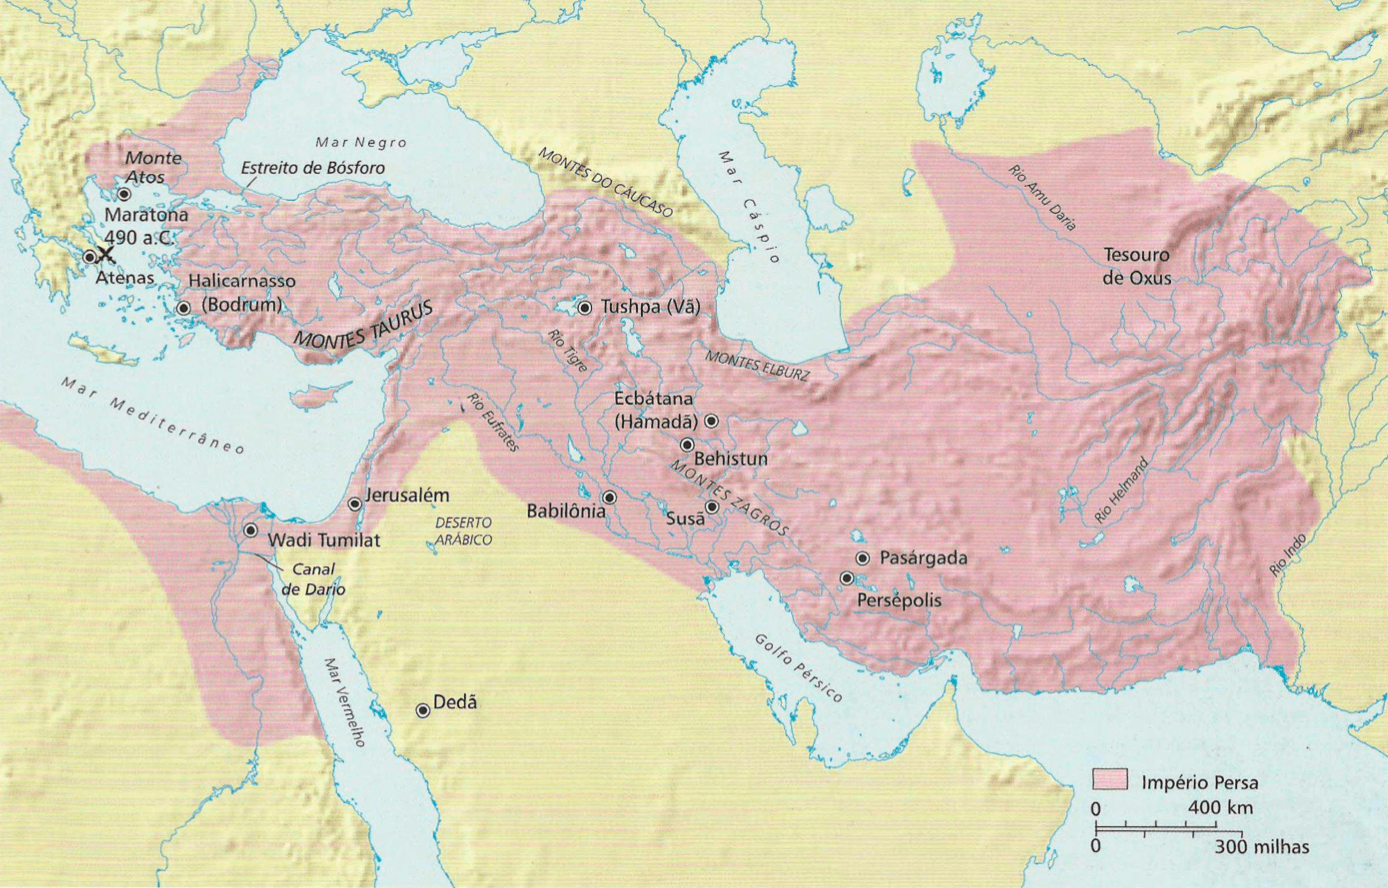 Império Persa Os persas dominaram um império que começava no mar Egeu e se estendia até o rio Indo. O rei persa Cambises conquistou o Egito em 525 a.C., e os reis persas Dario e Xerxes empreenderam campanhas malogradas contra a Grécia em 490 e 480 a.C.